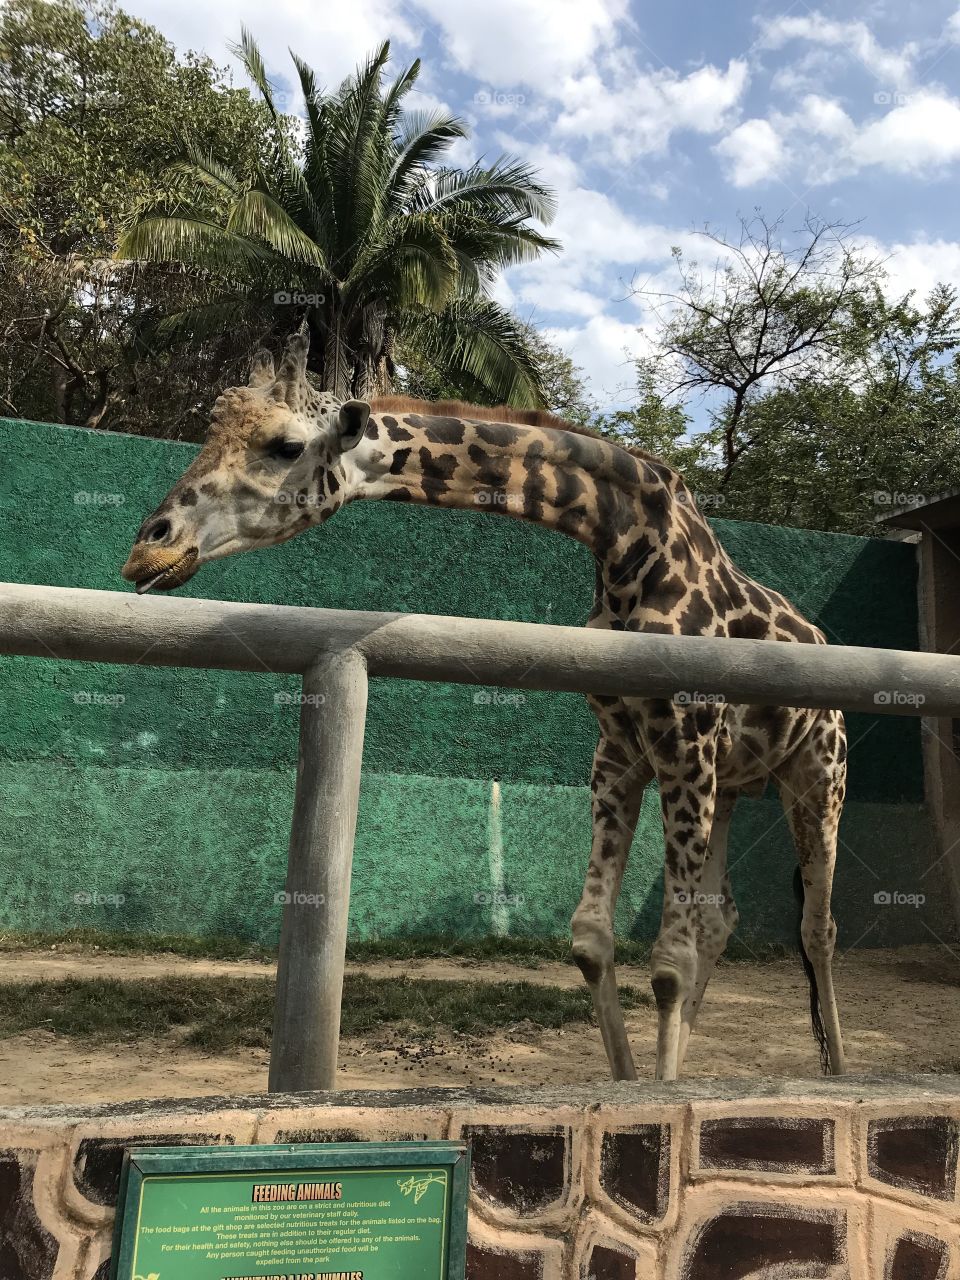 Happy giraffe waiting for carrots at the Puerto Vallarta zoo!